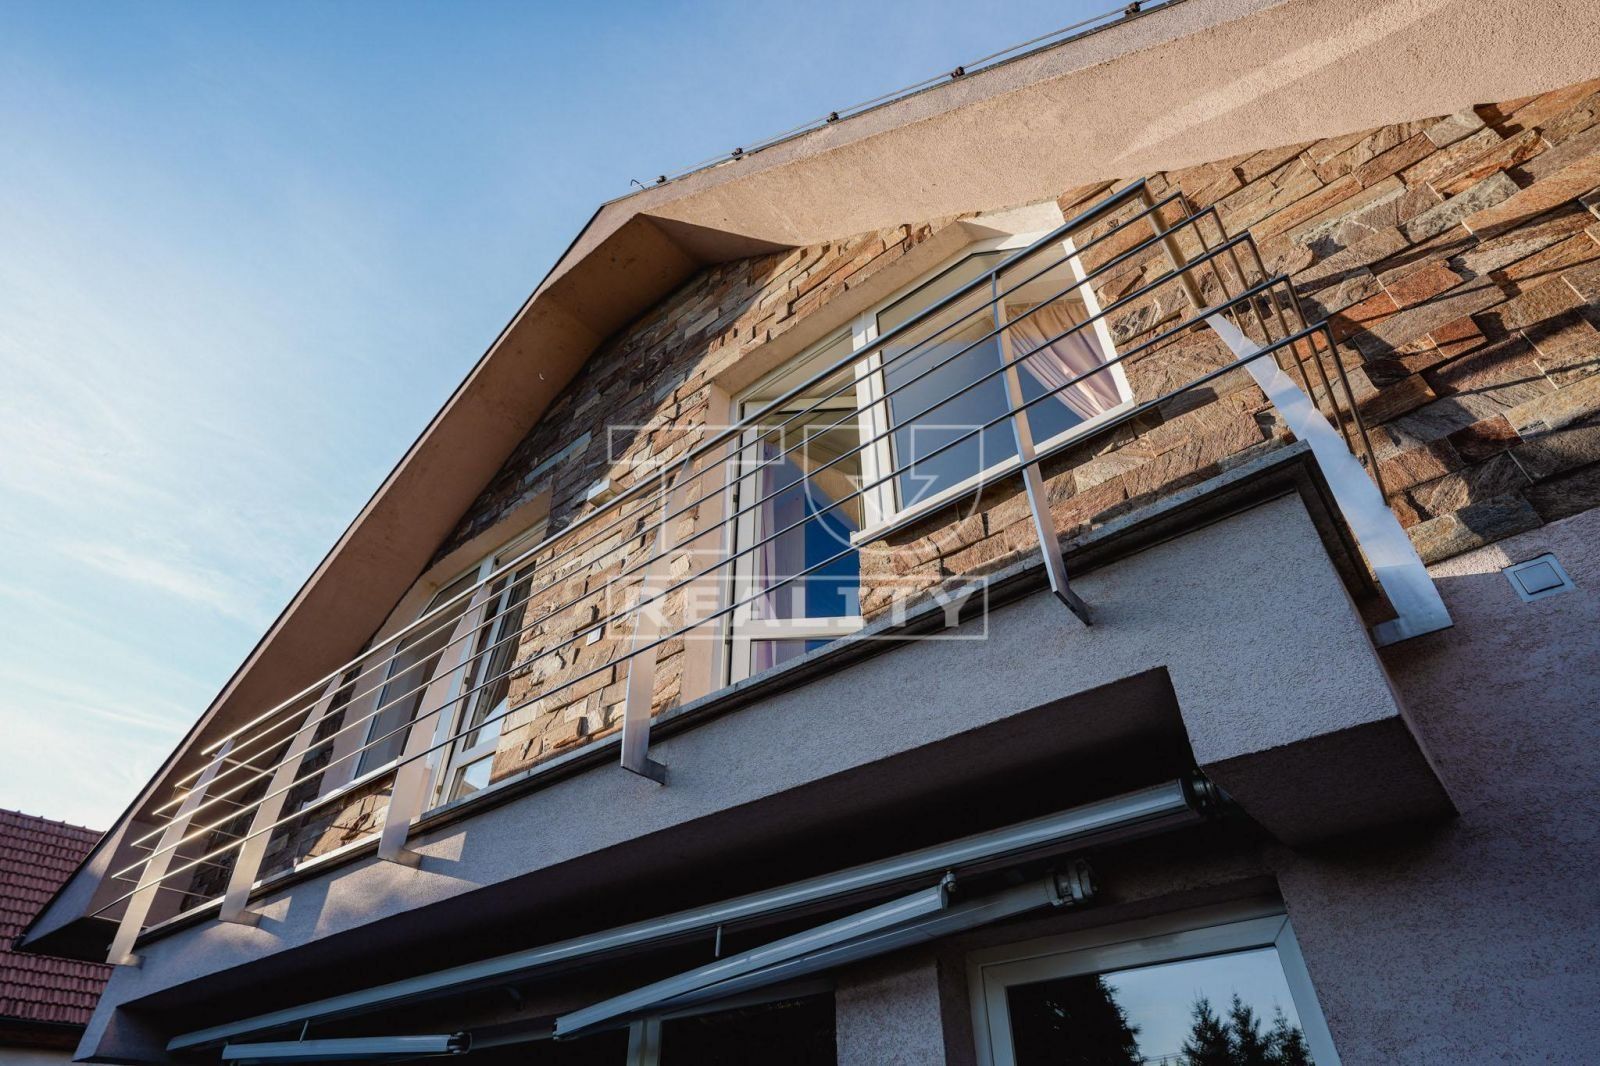 TUreality ponúka exkluzívne na predaj moderný nádherný rodinný dom 6 km od Trnavy